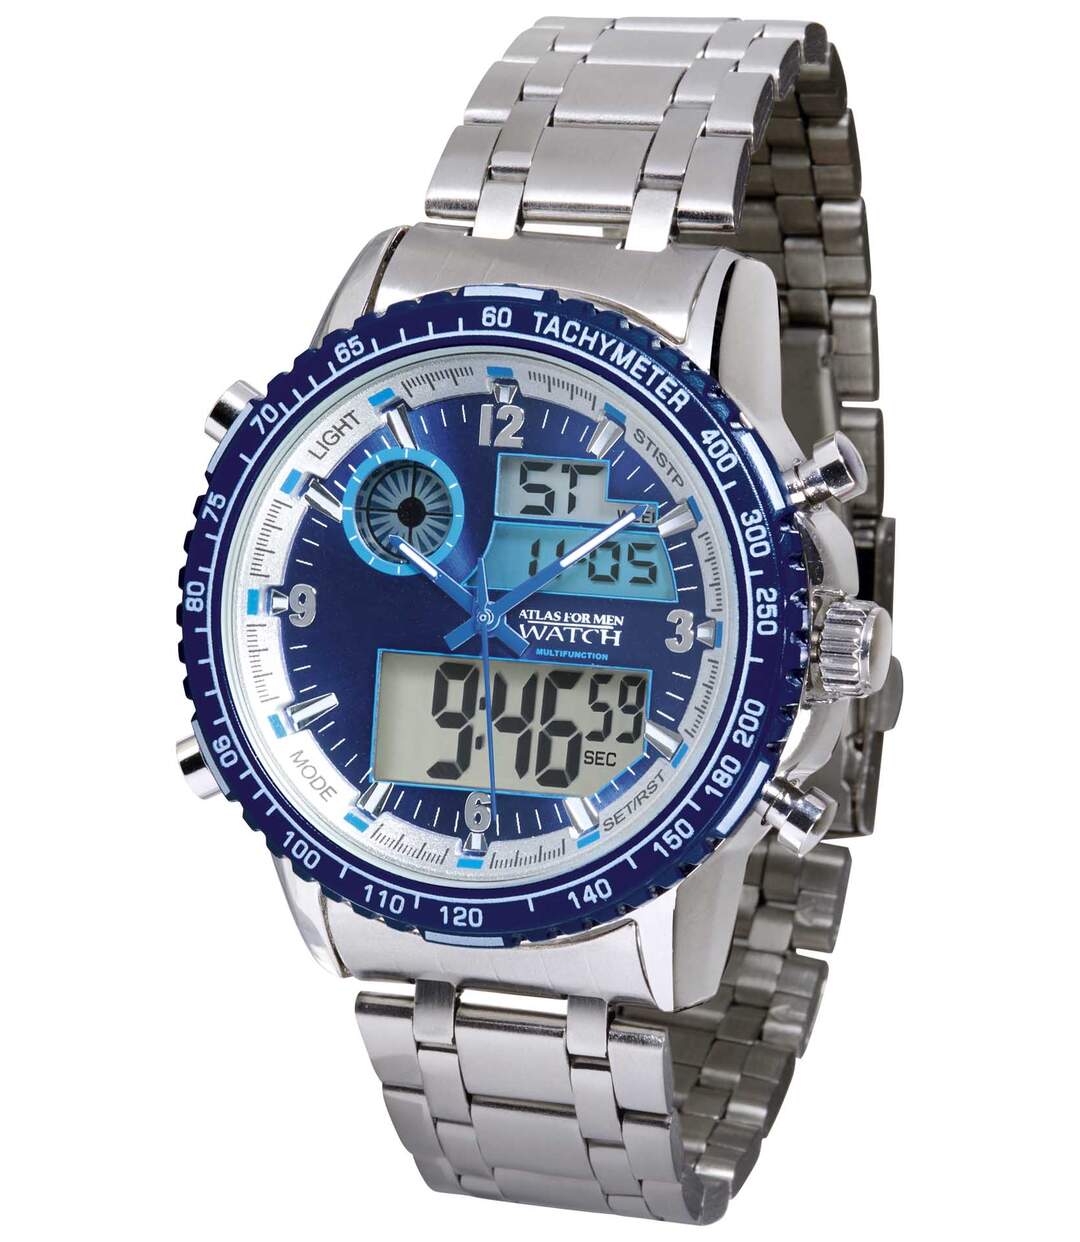 Horloge met stopwatch en dubbele tijdweergave  Atlas For Men